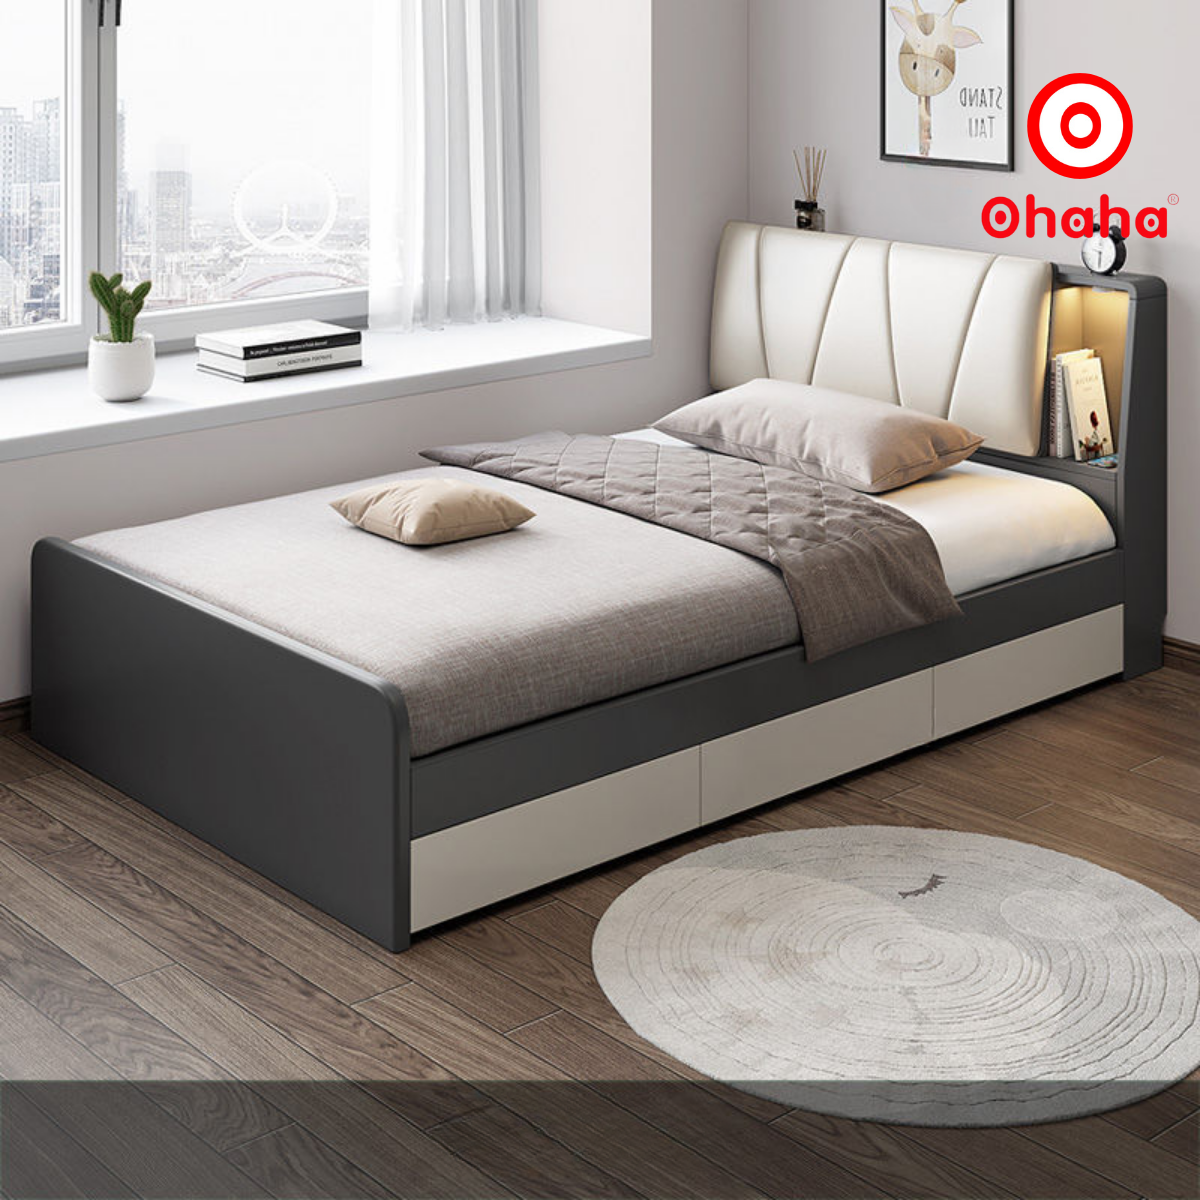 Hình ảnh [Miễn phí vận chuyển & lắp đặt] Giường ngủ thông minh cao cấp bọc nệm đầu giường gỗ công nghiệp Ohaha - GN006